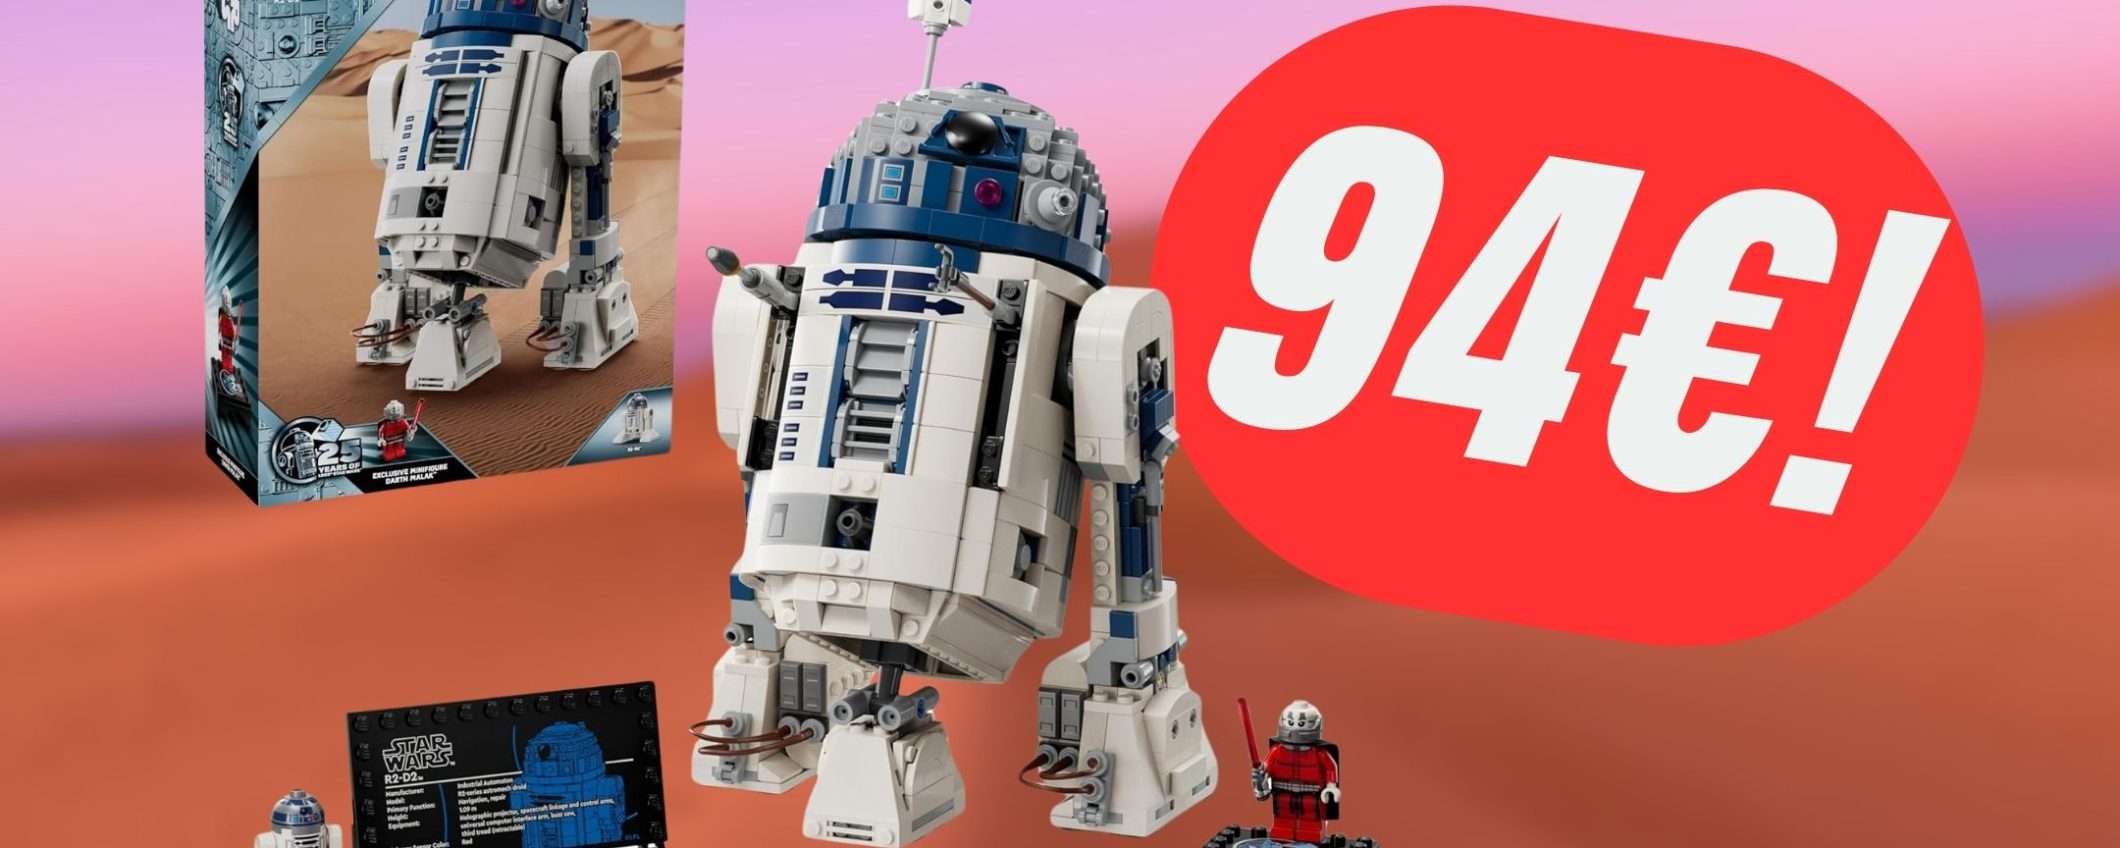 Il set LEGO di R2-D2 torna disponibile (e SCONTATO) su Amazon!